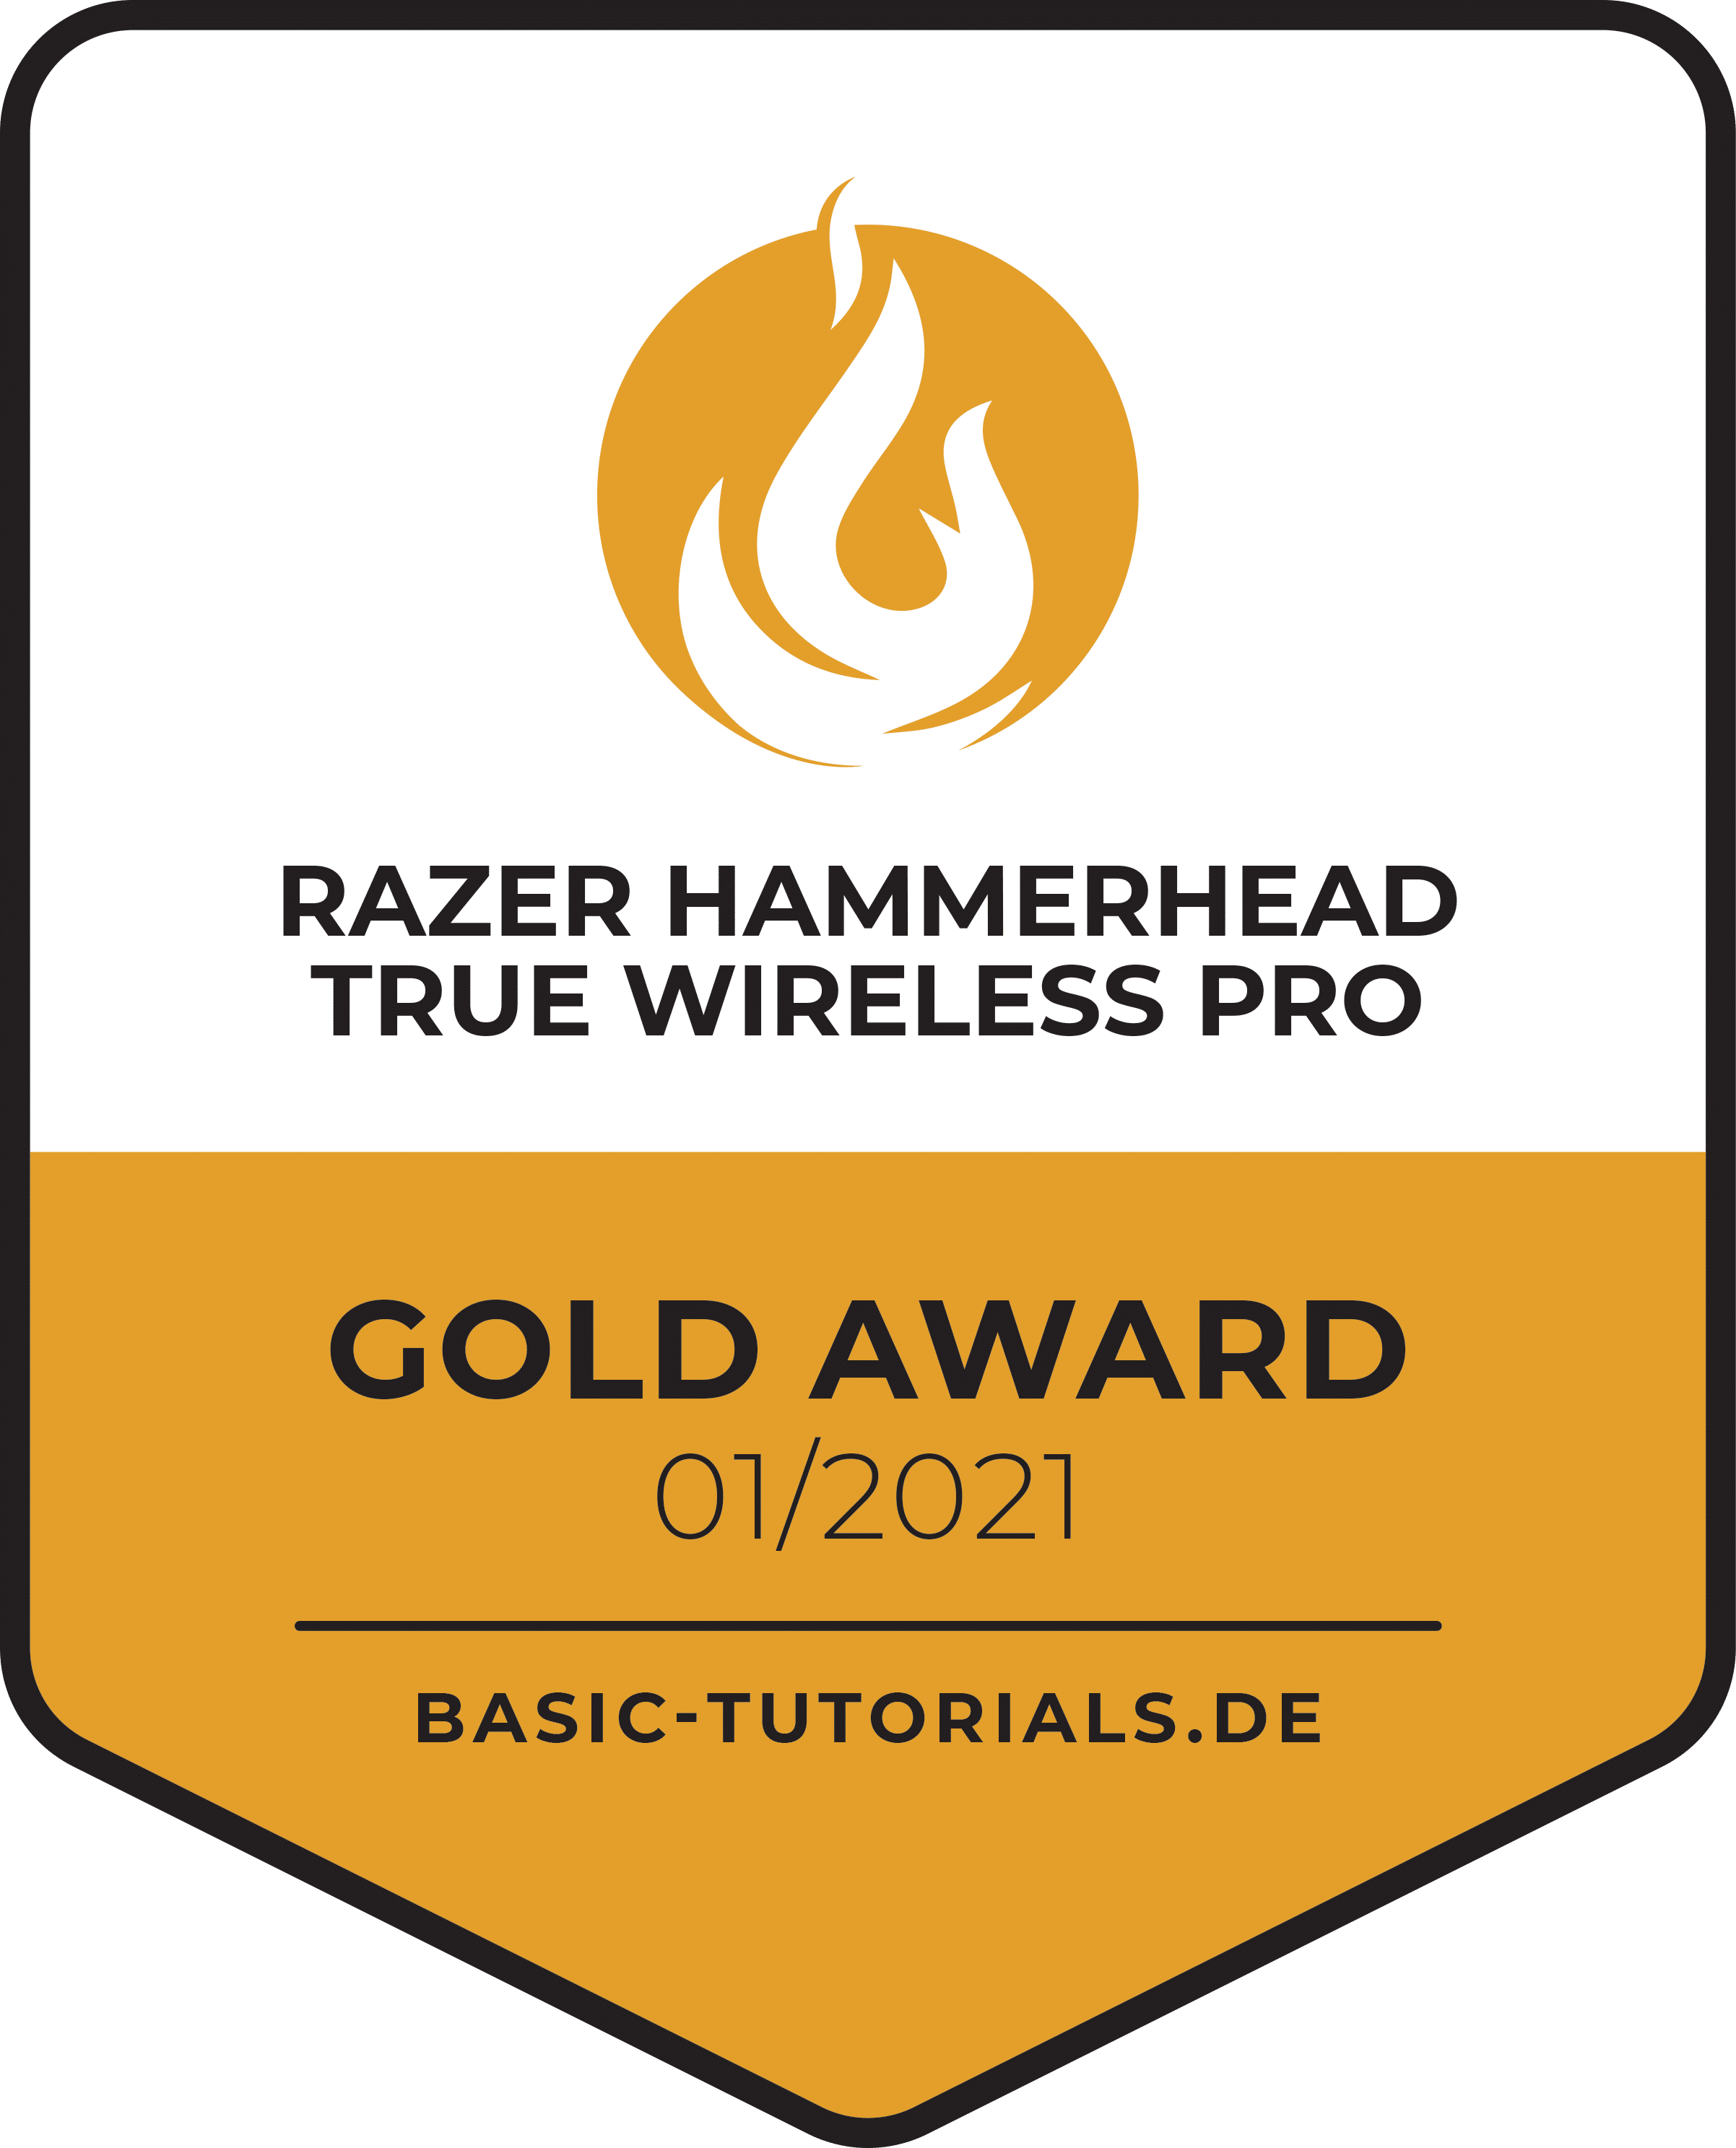 Razer Hammerhead True Wireless Pro Earbuds Long Name Much Behind It